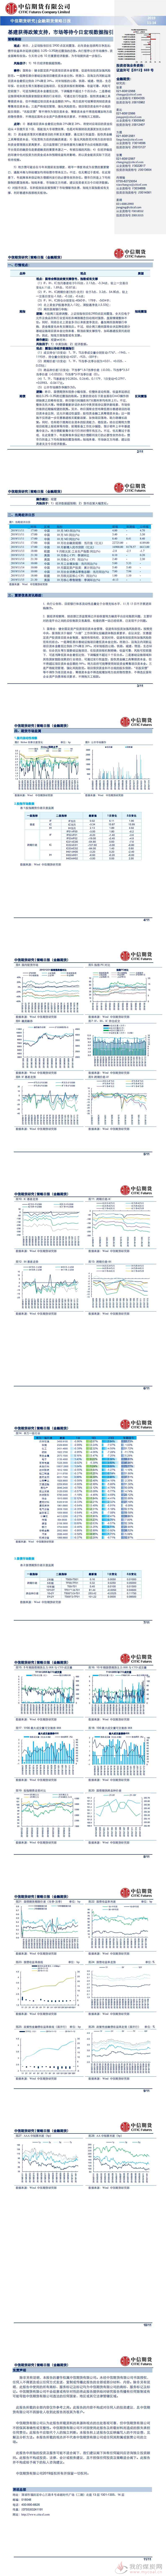 【中信期货金融】基建获得政策支持，市场等待今日宏观数据指引——日报20191114_0